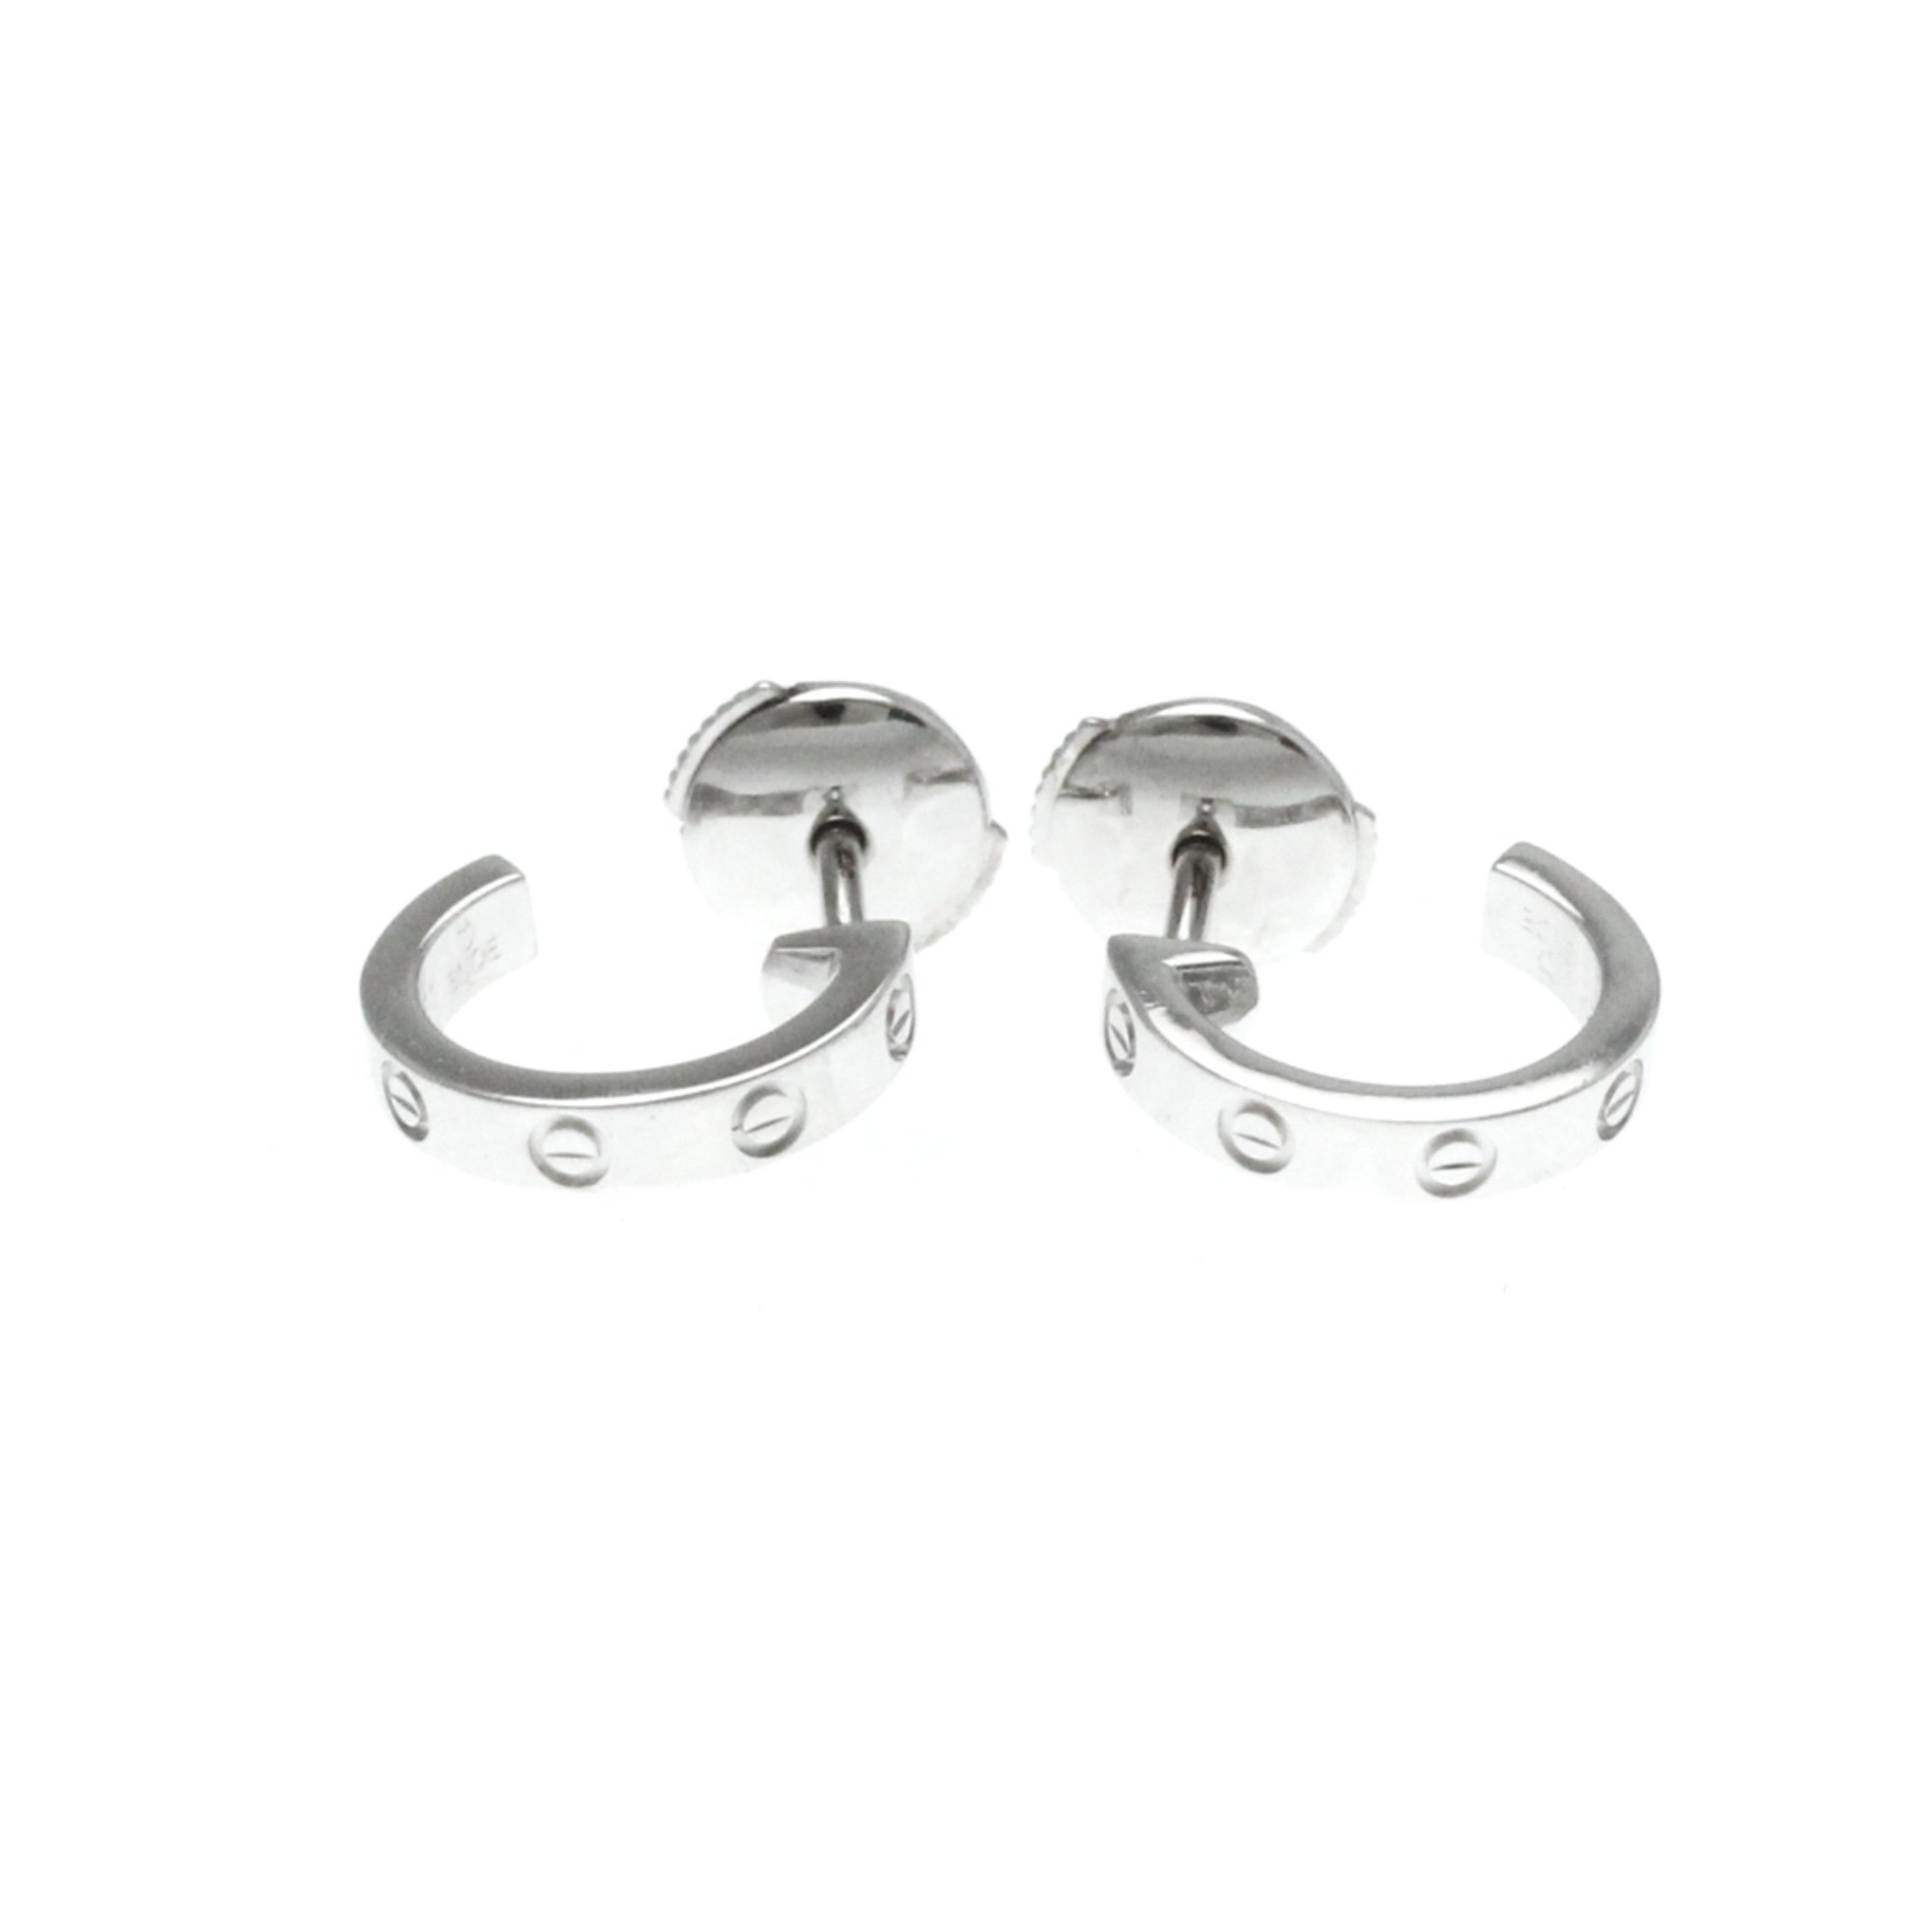 Cartier Mini Love Earrings No Stone White Gold (18K) Half Hoop Earrings Silver